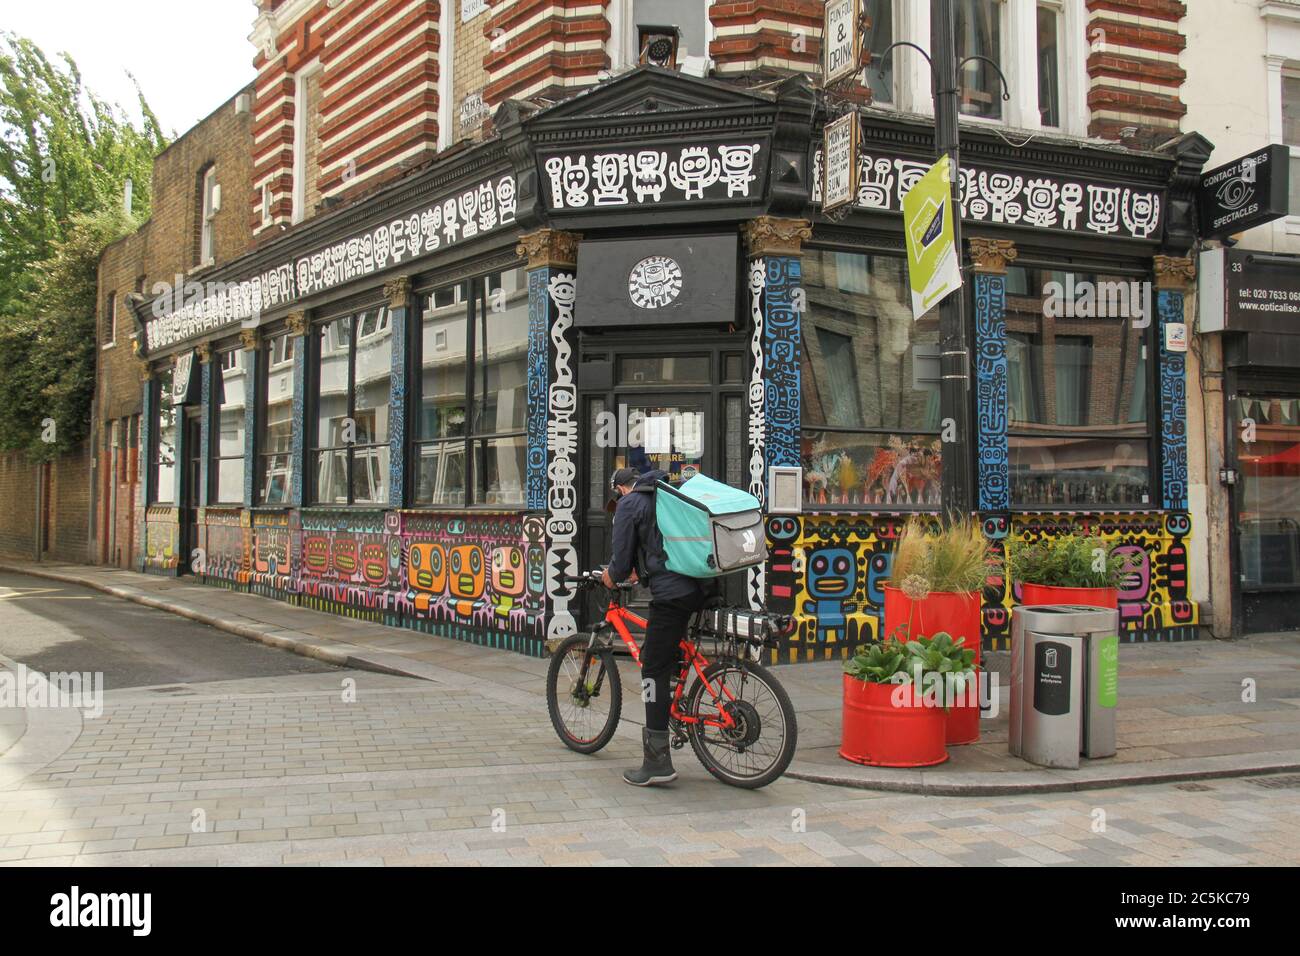 Un vélo deliveroo s'arrête devant un restaurant à la gare de Waterloo qui n'a pas encore ouvert ses portes.Daily LIFE à Londres un vendredi avant l'ouverture des pubs le 4 juillet, conformément aux nouveaux conseils du gouvernement. Banque D'Images